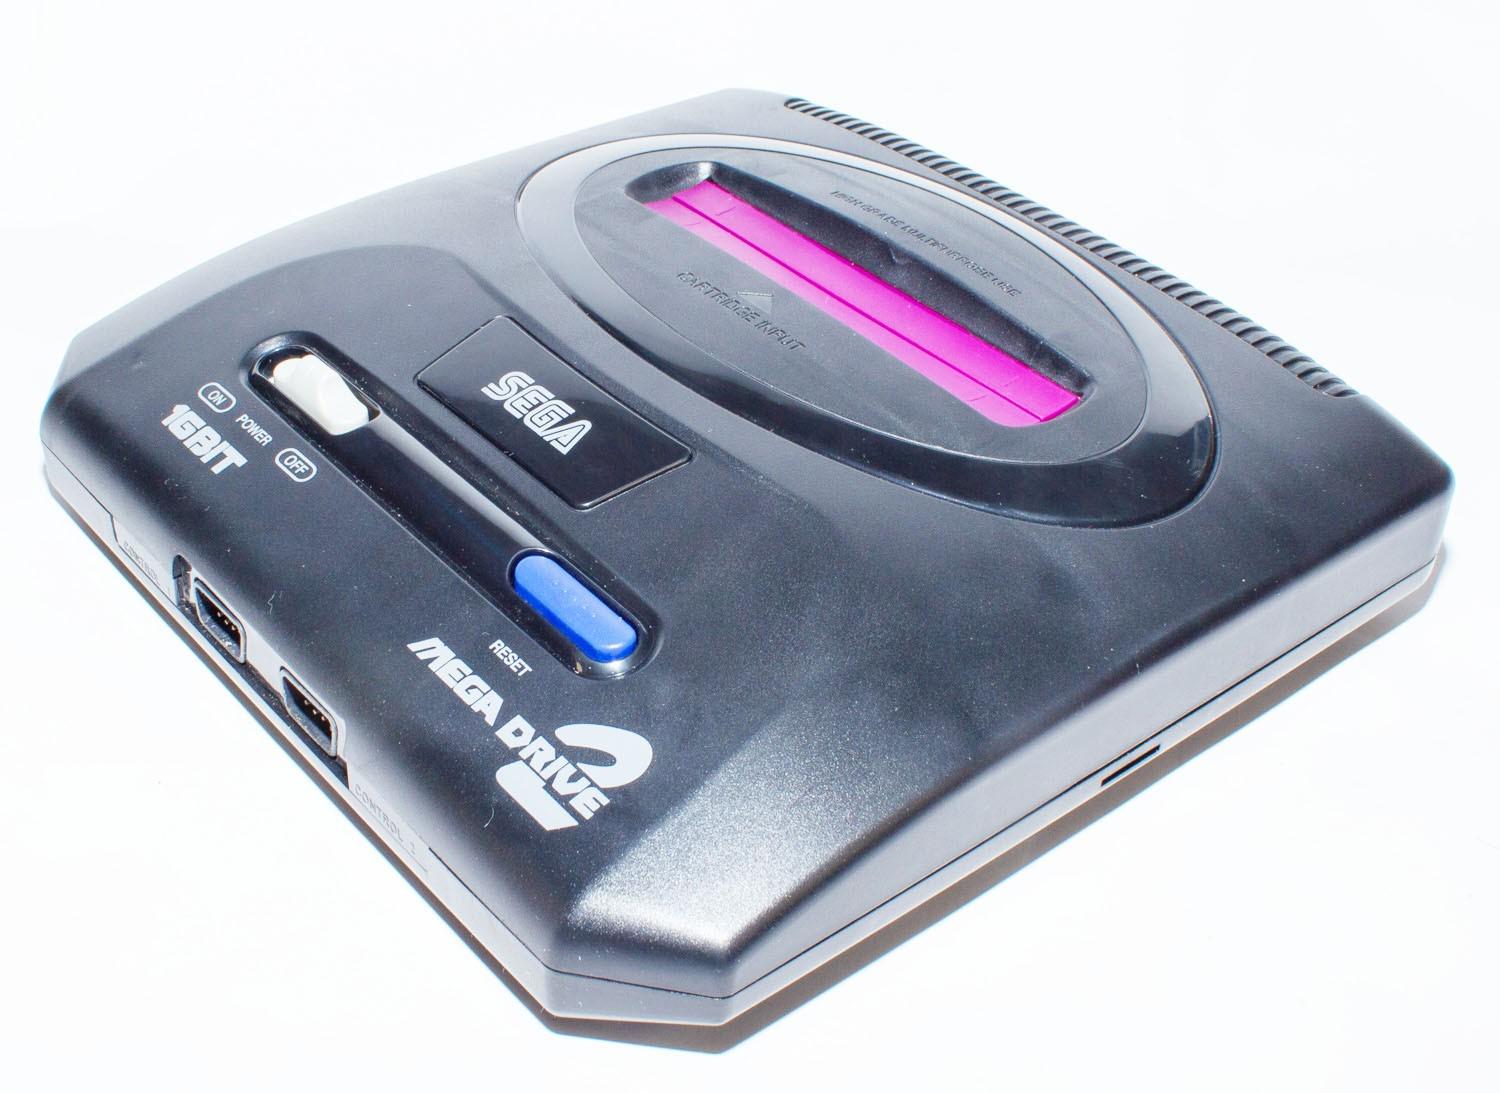 Ігрова приставка Sega Mega Drive 2 16 біт